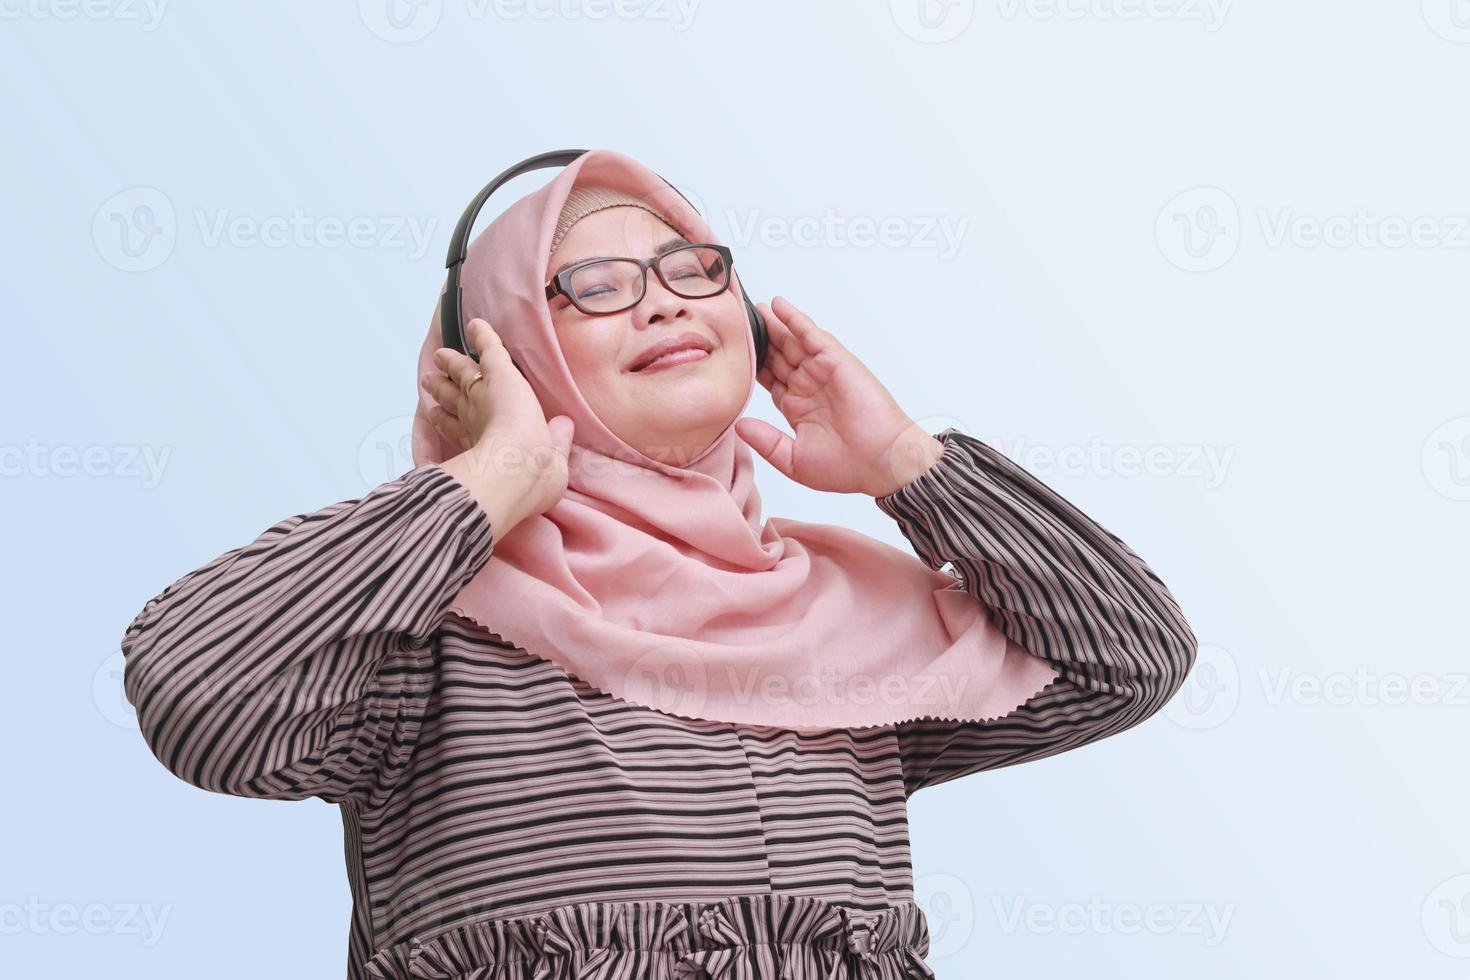 porträtt av glad asiatisk kvinna med hijab, njuter och lyssnande till musik använder sig av hörlurar. isolerat bild på blå bakgrund foto